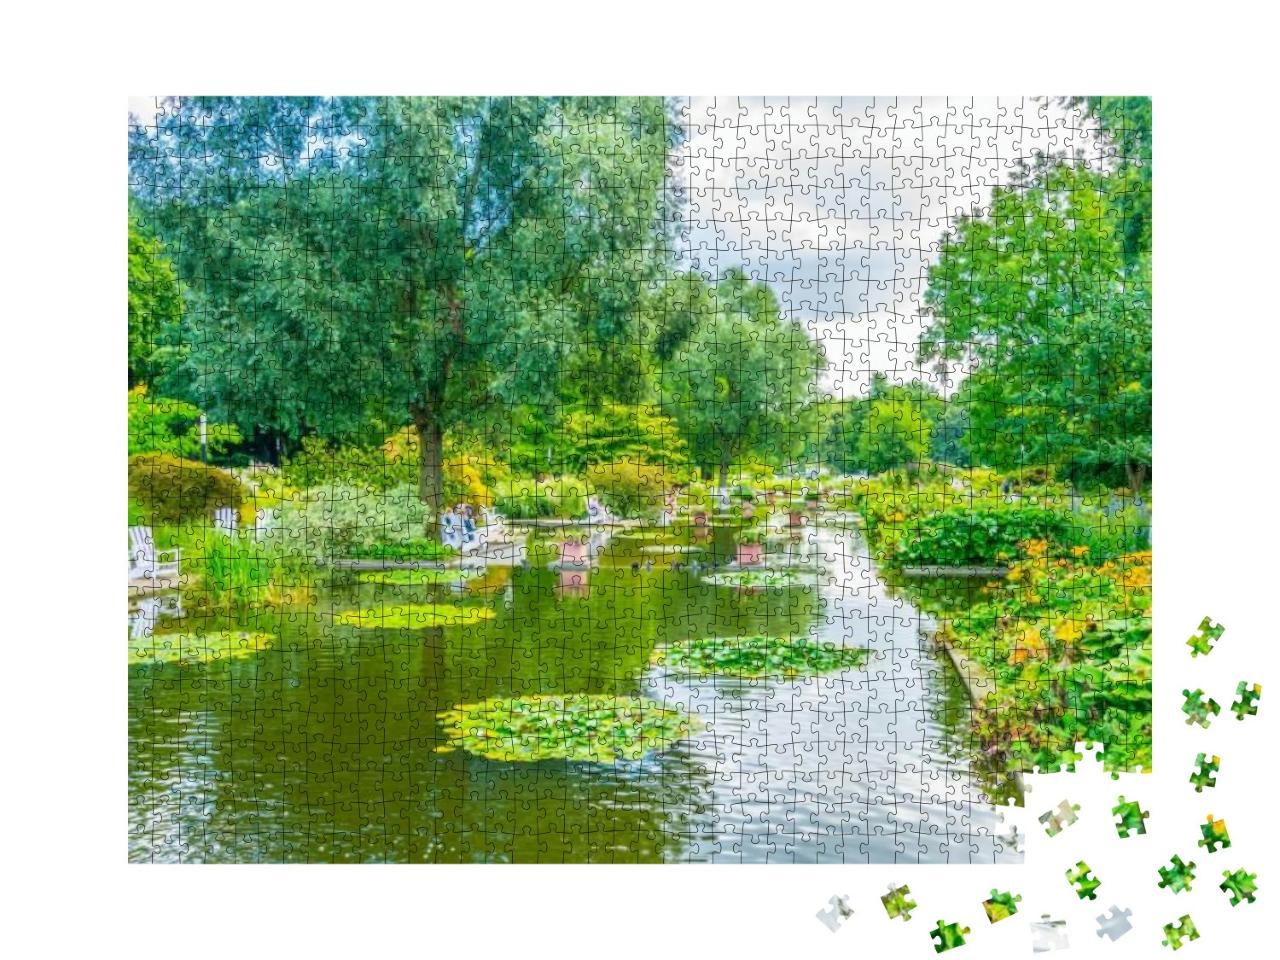 Planten Un Bloomen Old Botanical Garden in Hamburg, Germa... Jigsaw Puzzle with 1000 pieces